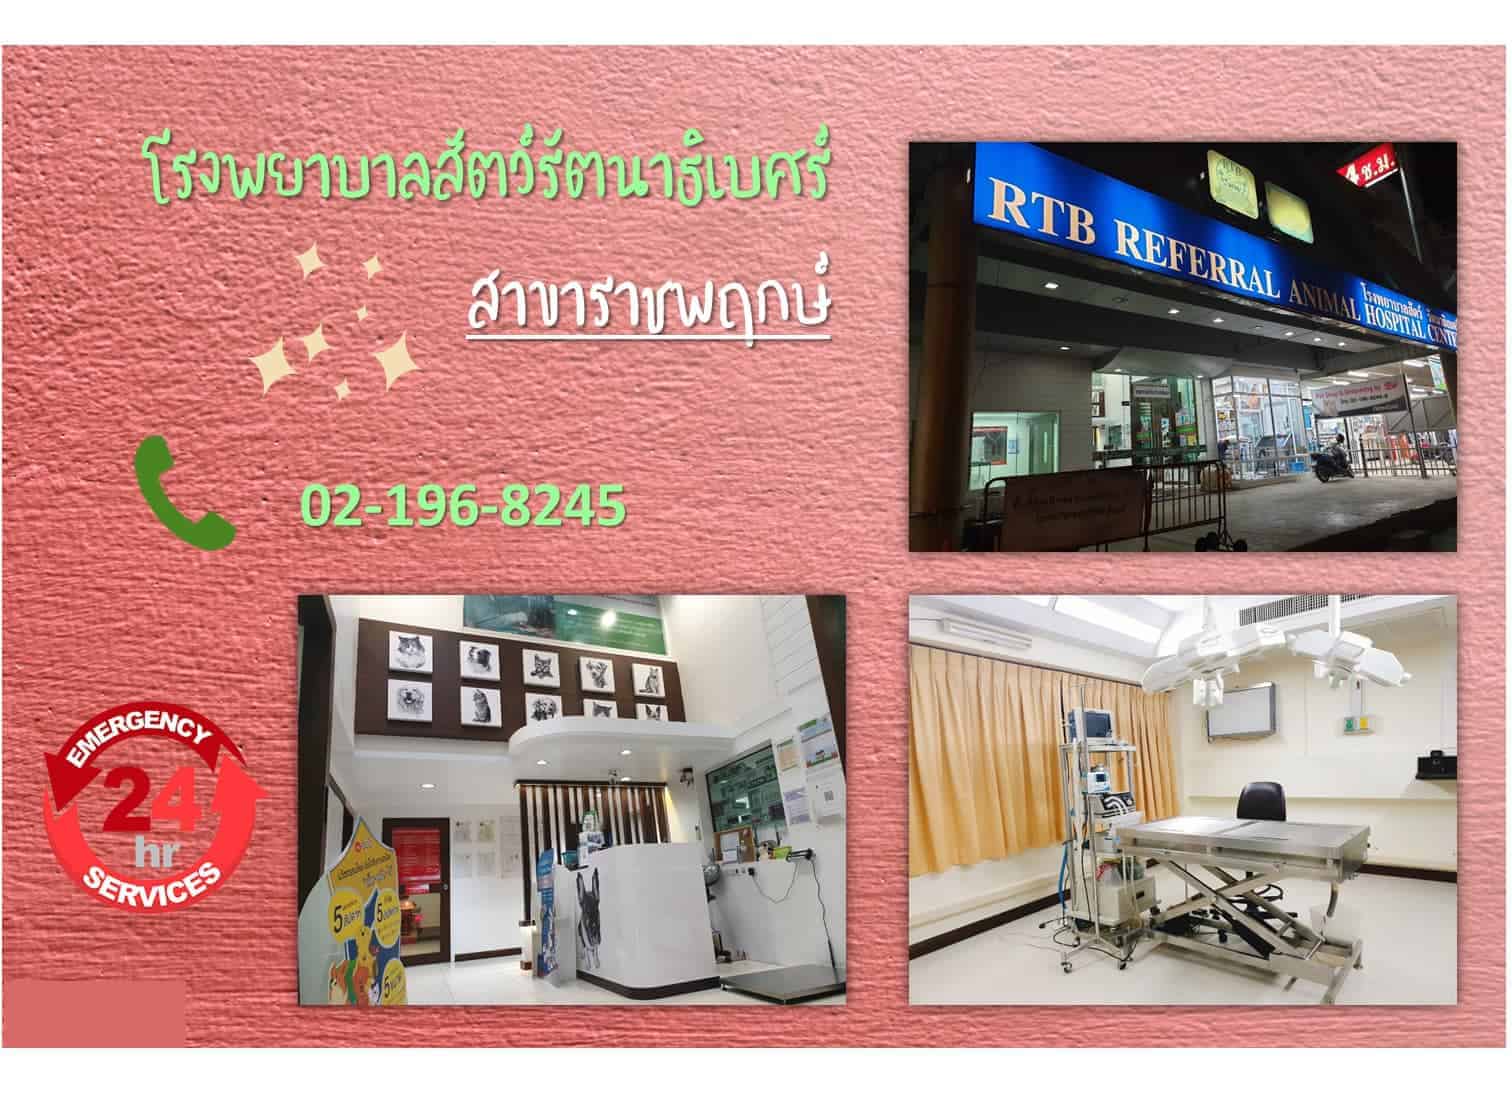 โรงพยาบาลสัตว์รัตนาธิเบศร์ (ราชพฤกษ์) RTB Referral Animal Hospital (Ratchapruek) 2